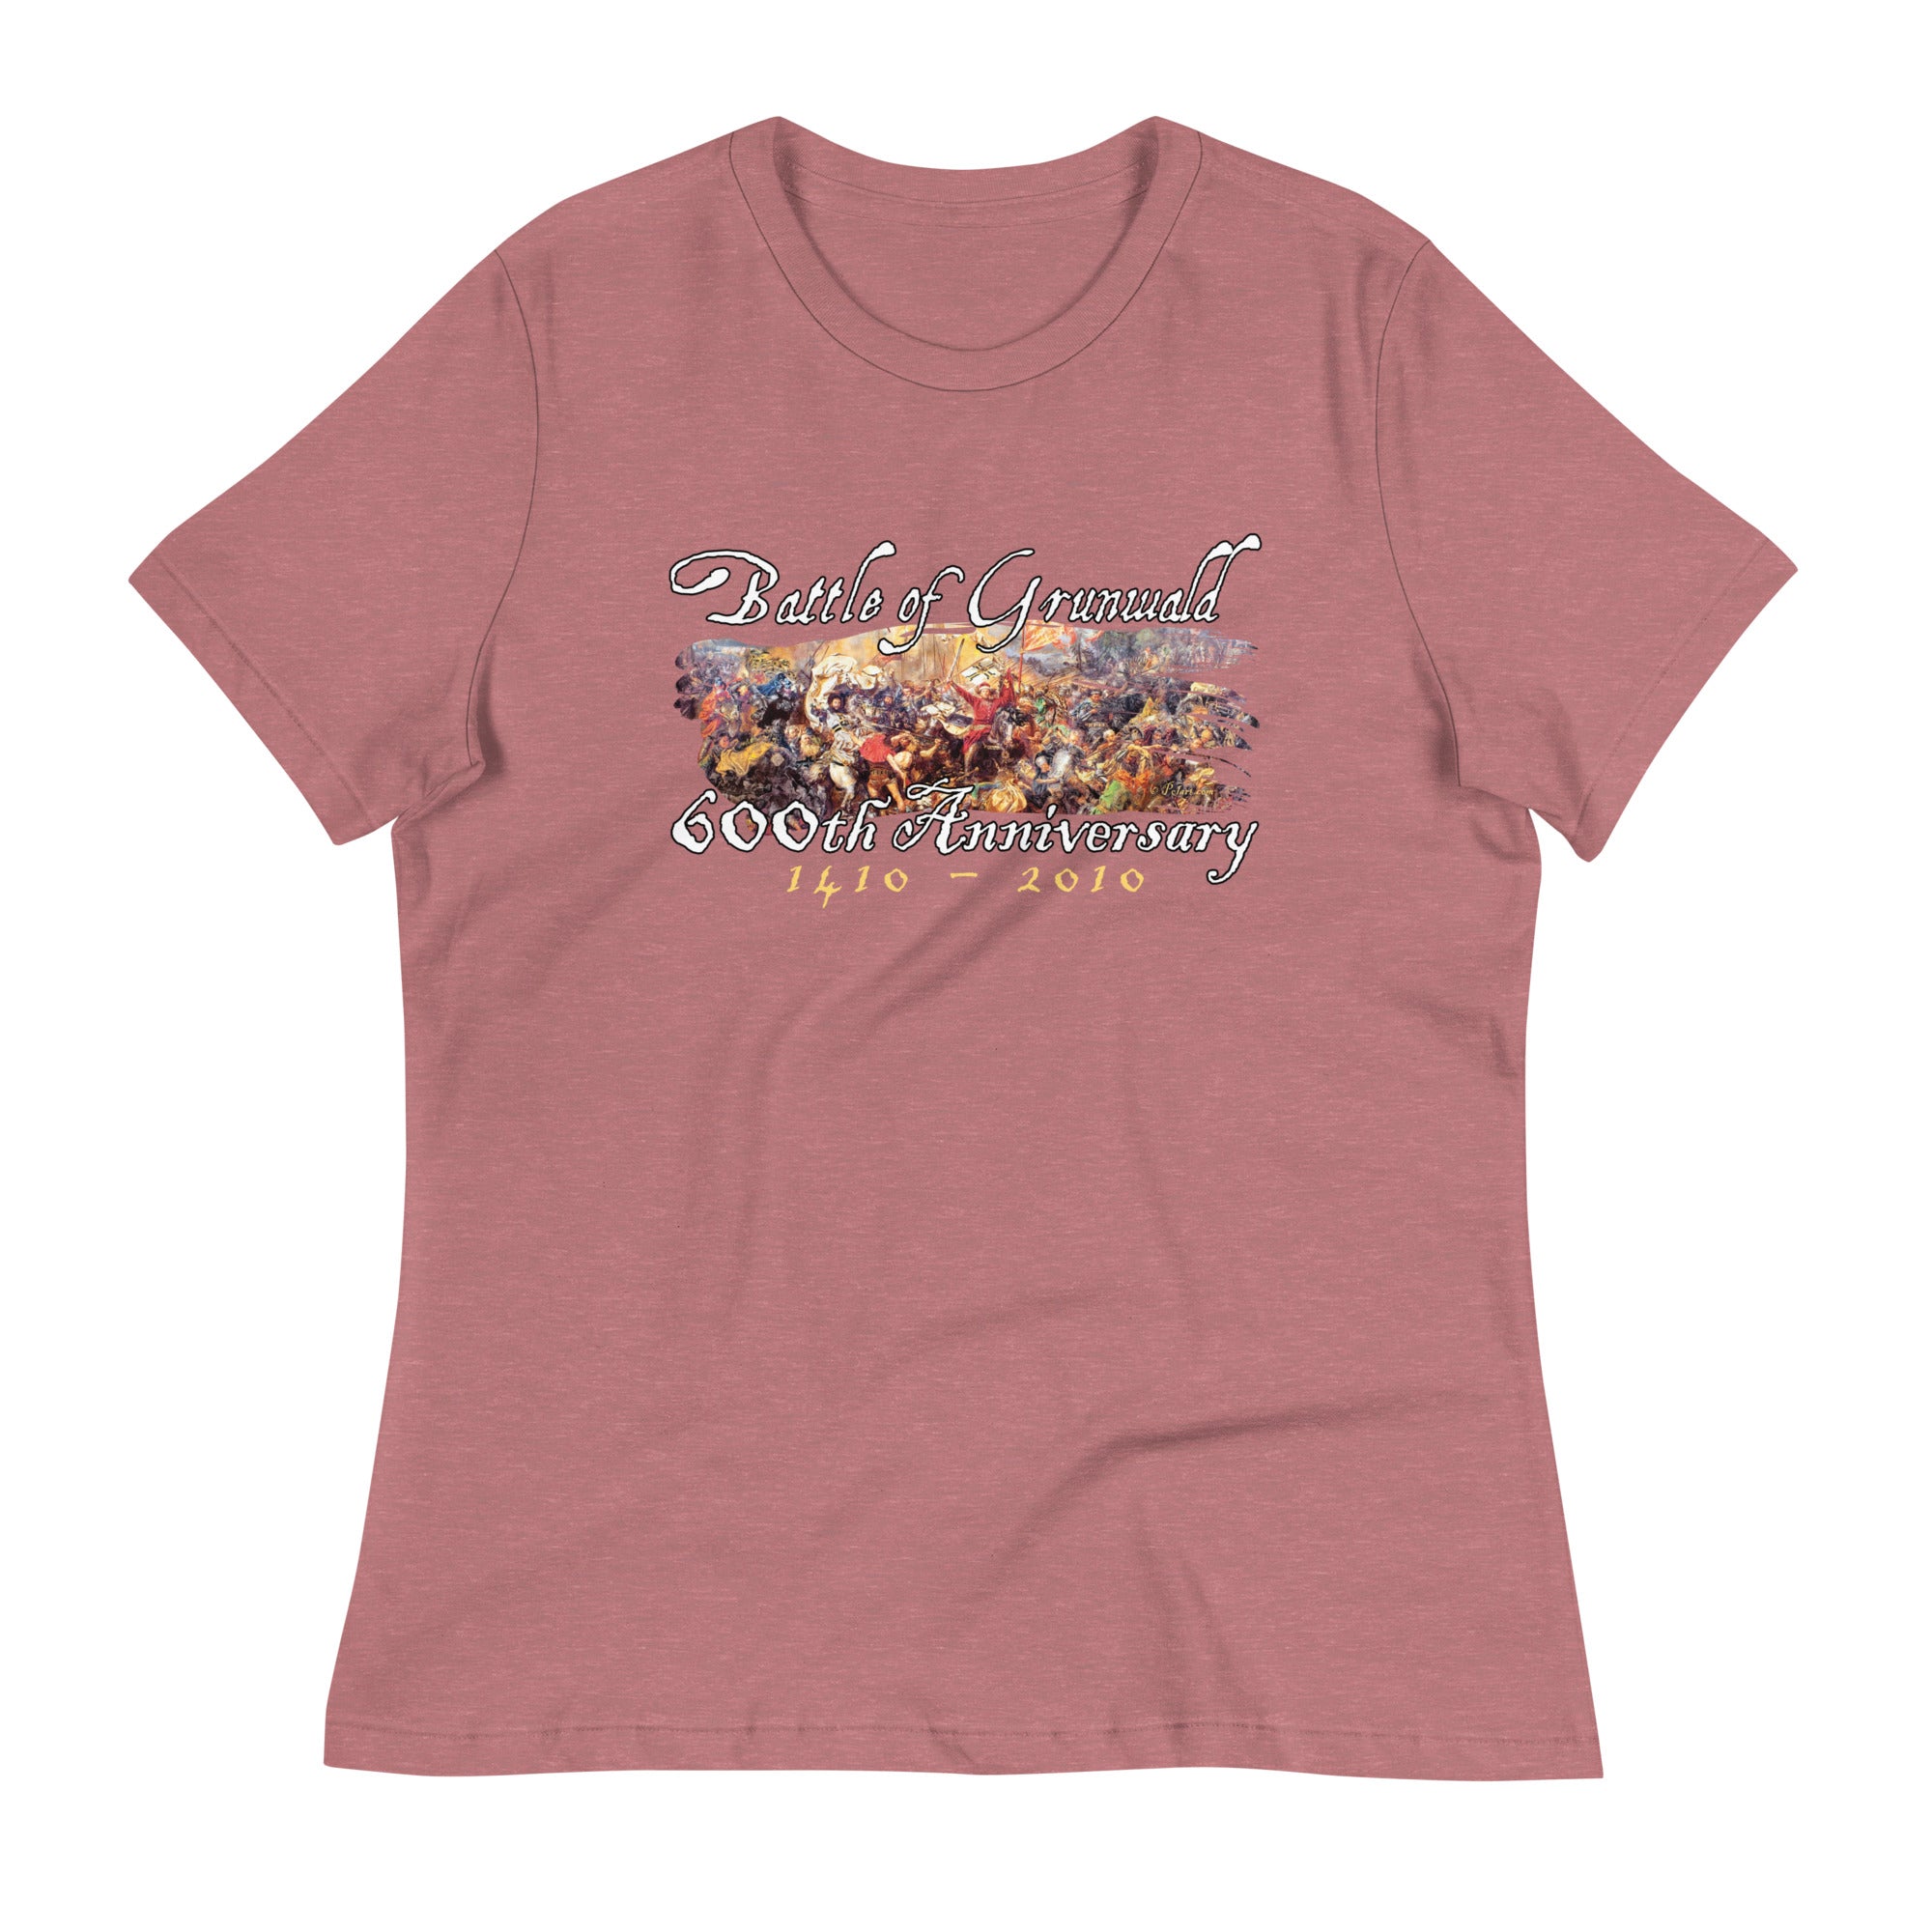 Battle Of Grunwald 600th Anniversary  Women's Relaxed T-Shirt